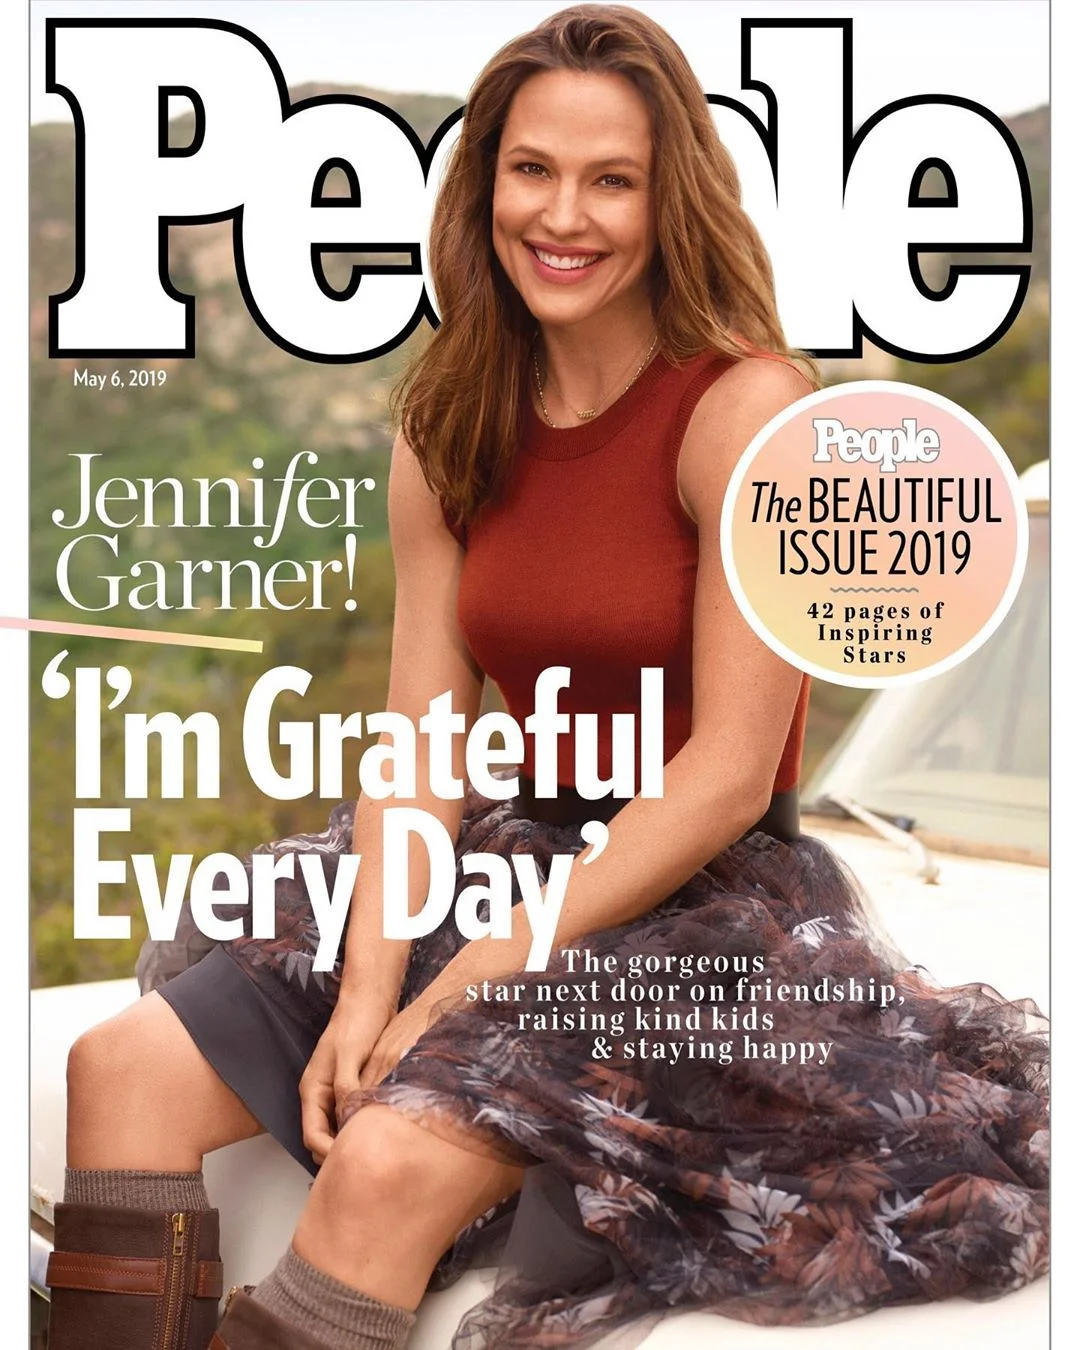 Дженніфер Гарнер - найкрасивіша жінка світу 2019 за версією журналу People - фото 430745